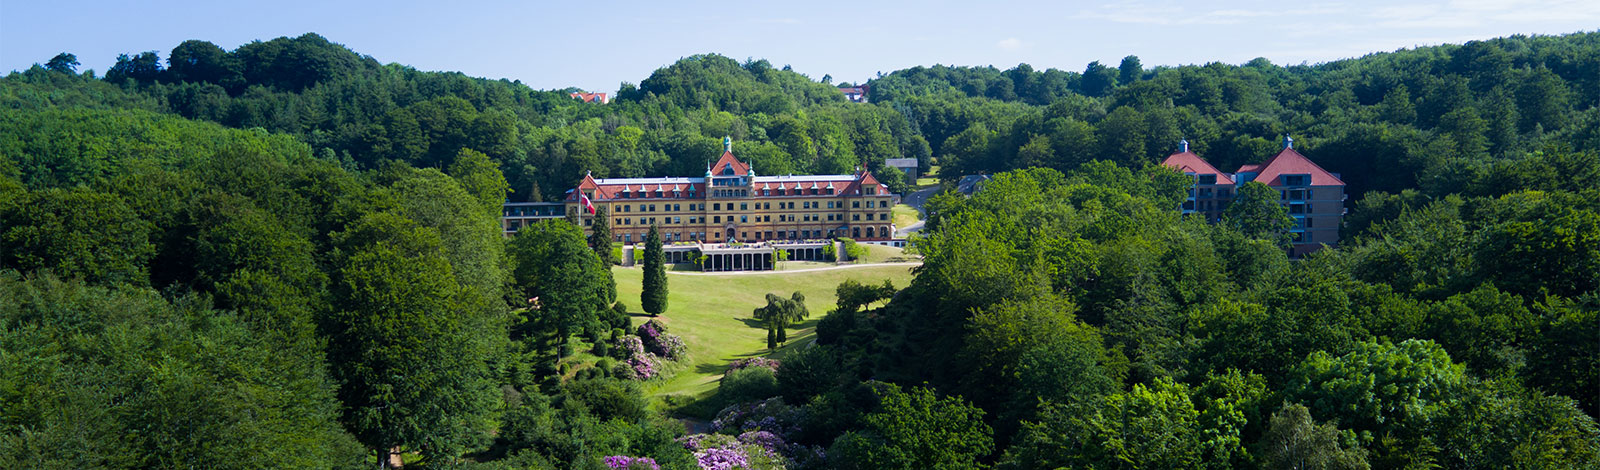 Hotel Vejlefjord midt i skoven lige ned til Vejle fjord